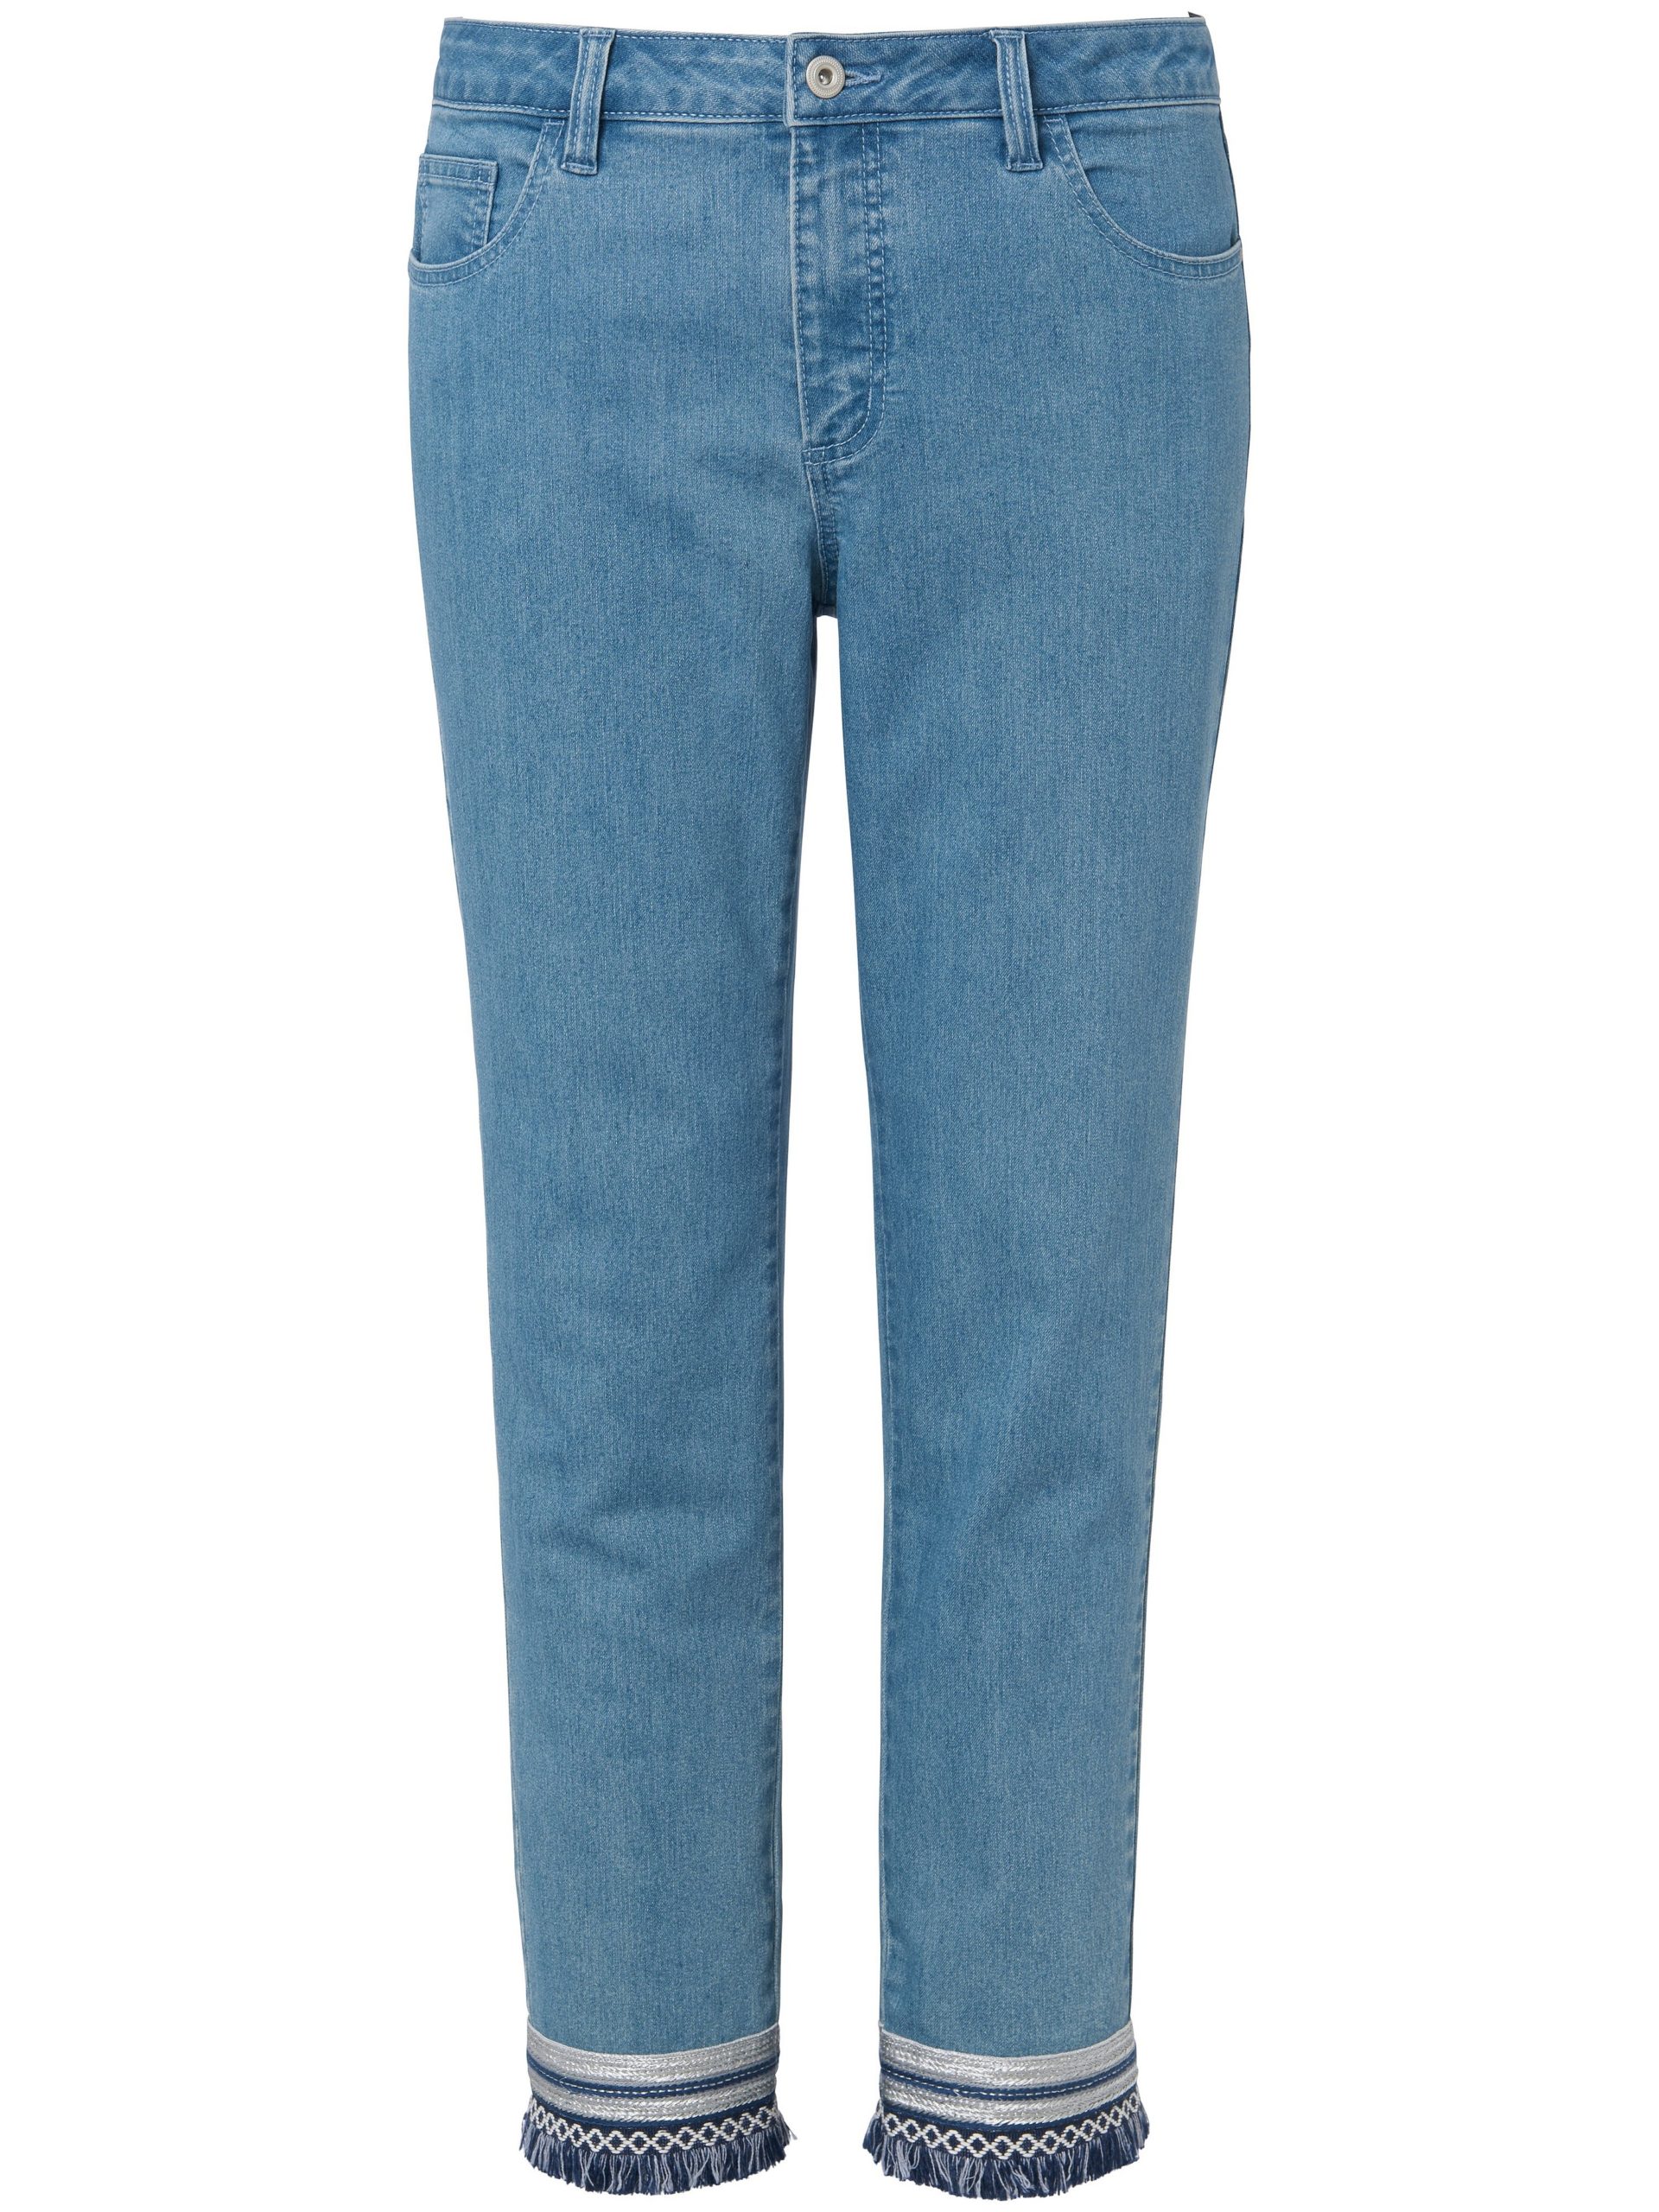 Enkellange jeans met smalle pijpen Van Emilia Lay denim Kopen